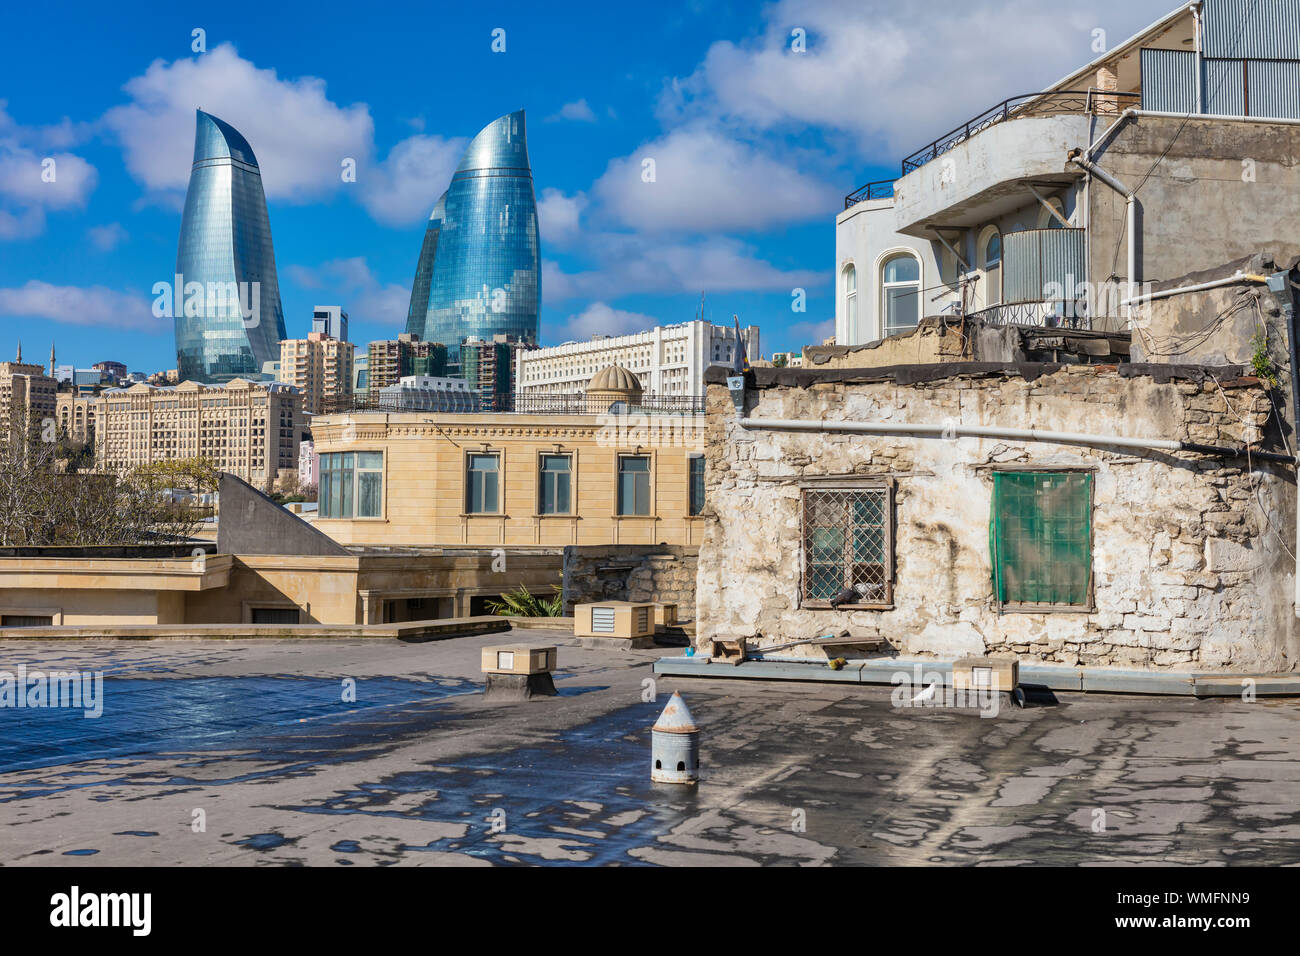 La città vecchia, la parte interna della città di Baku, Azerbaijan Foto Stock